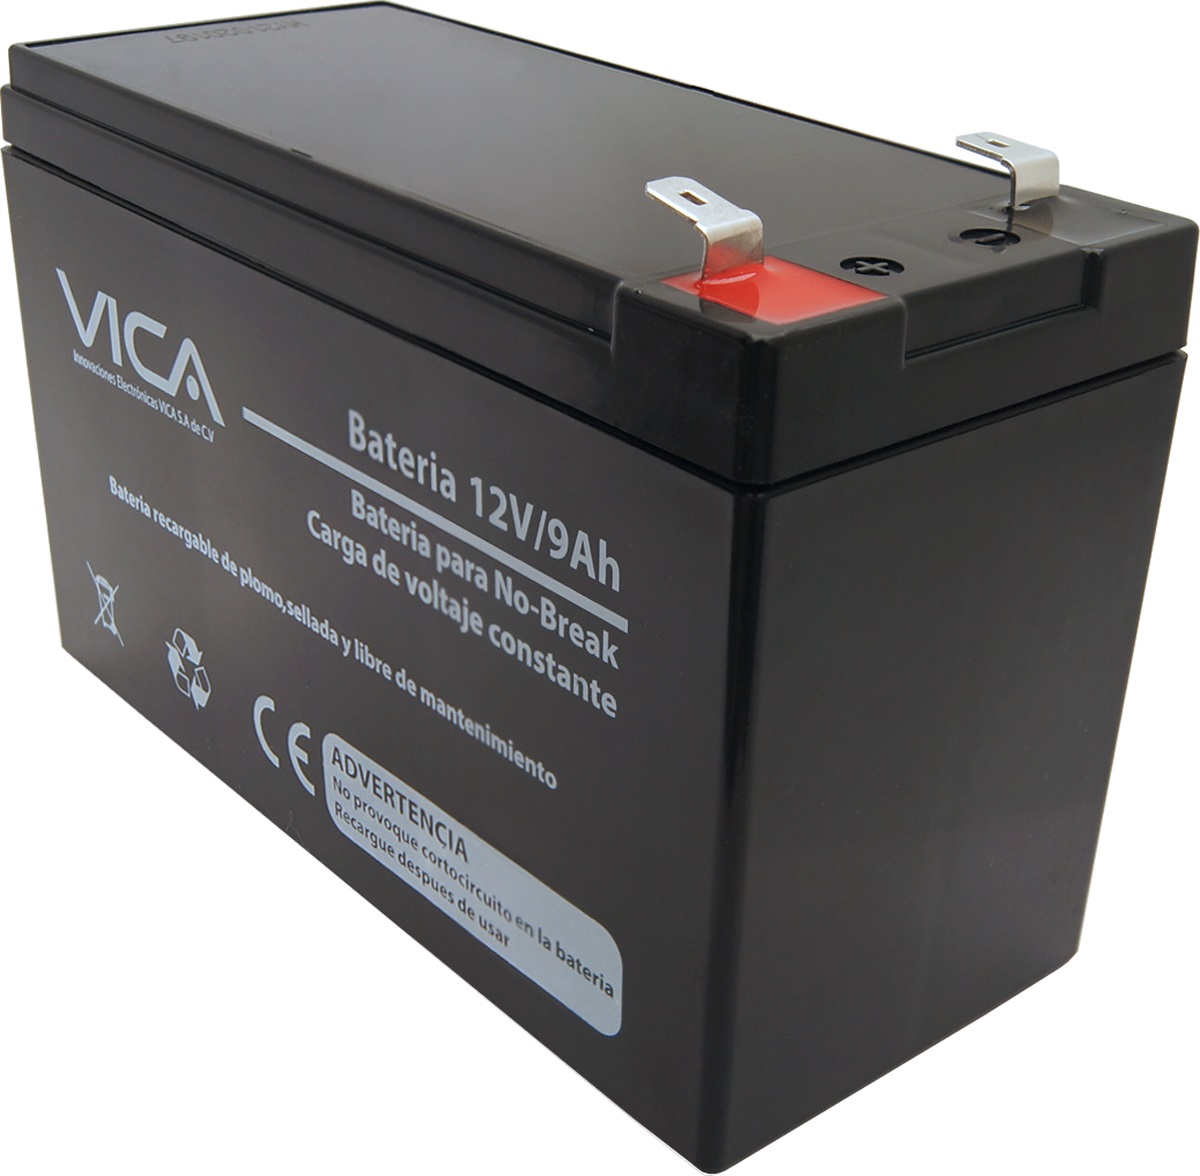 Batería de Reemplazo VICA 12V 9 AH -